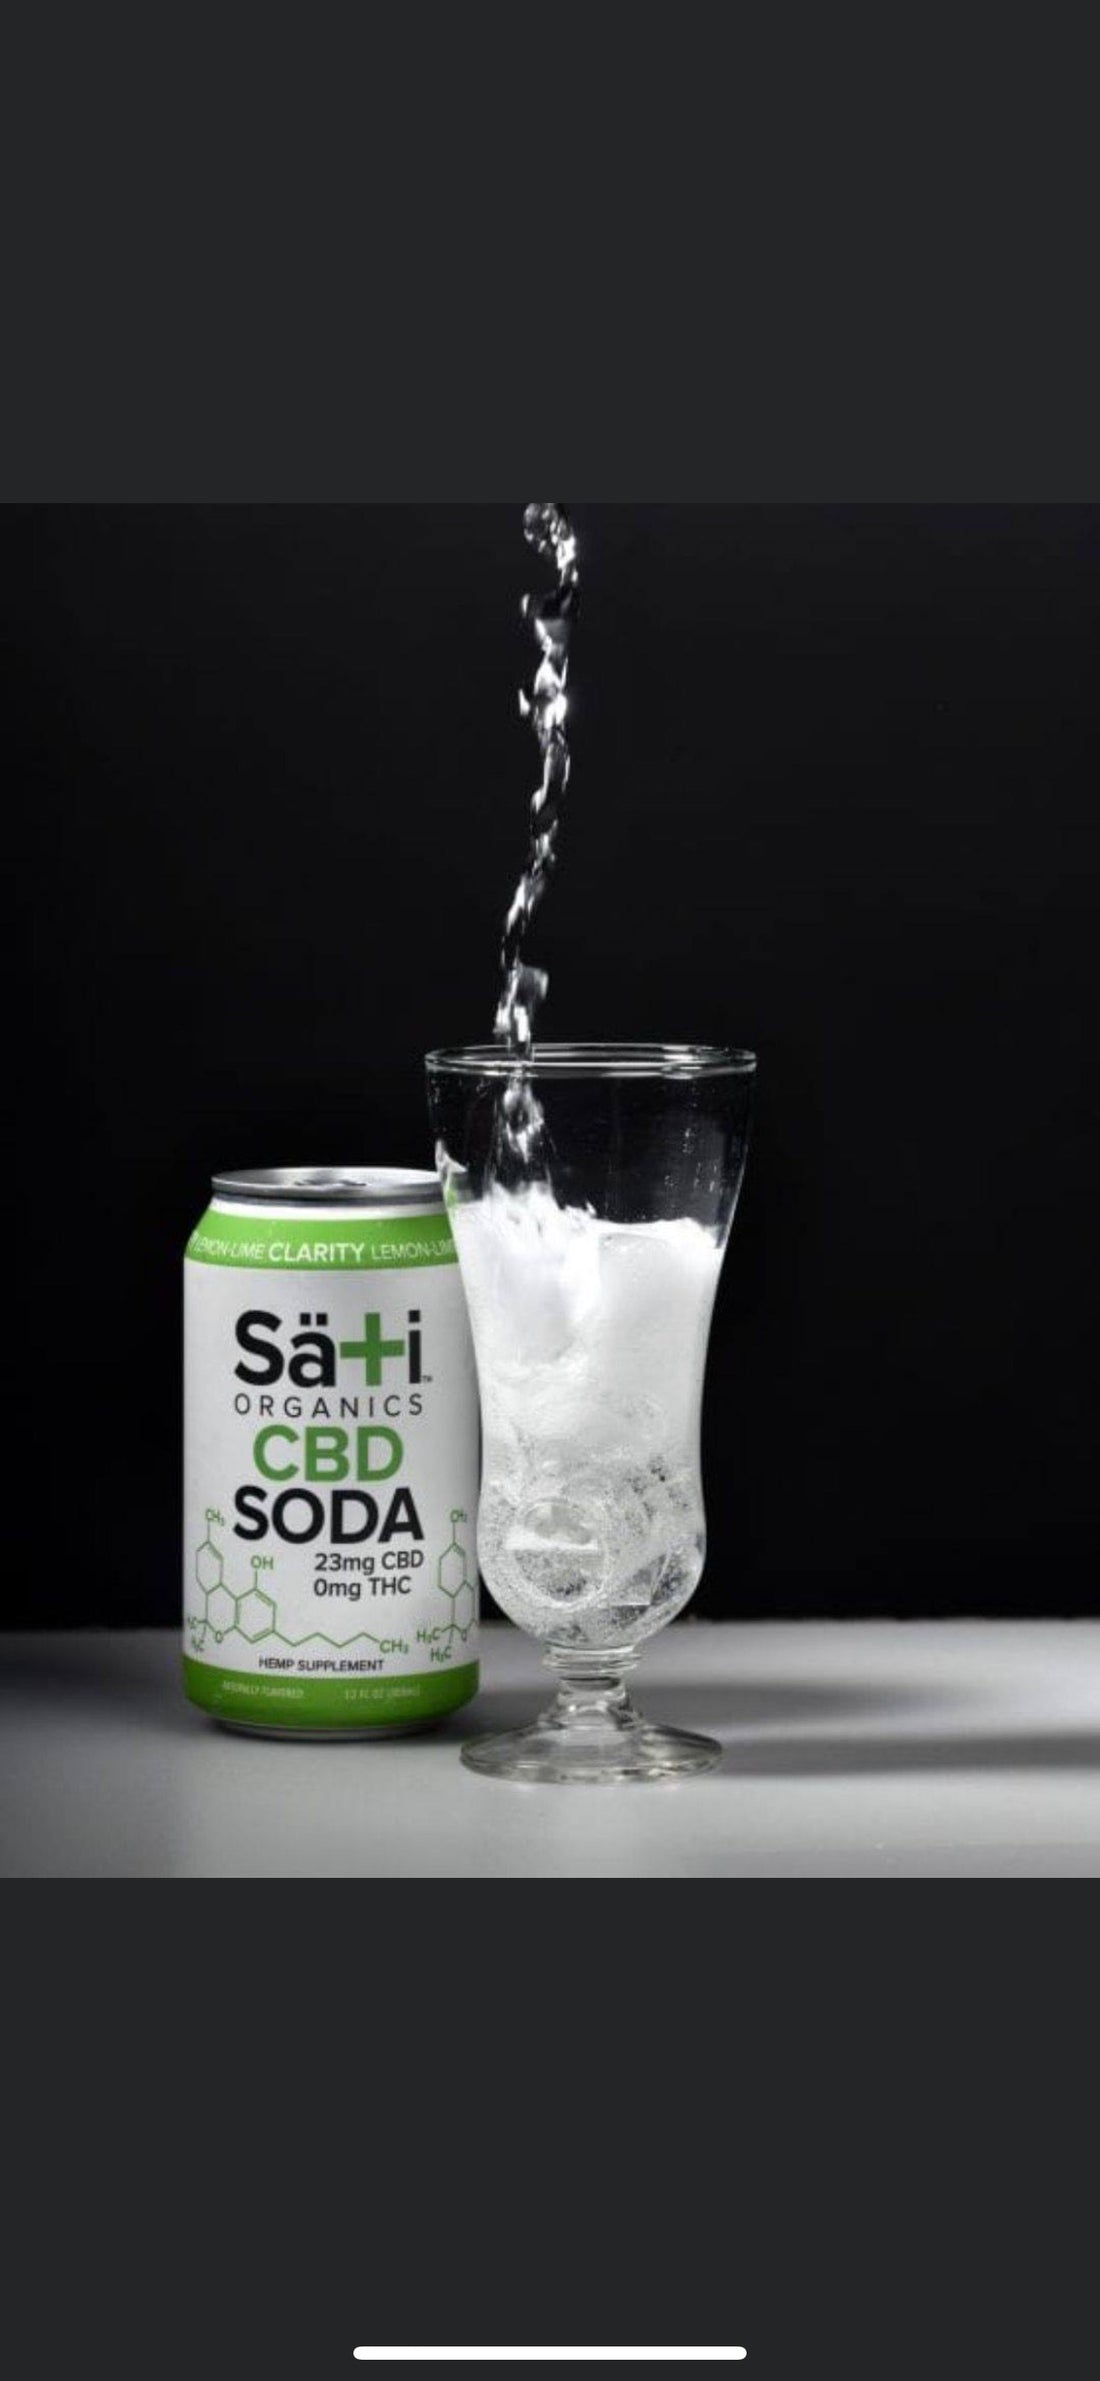 Sati Organics welcomes Sati CBD Soda